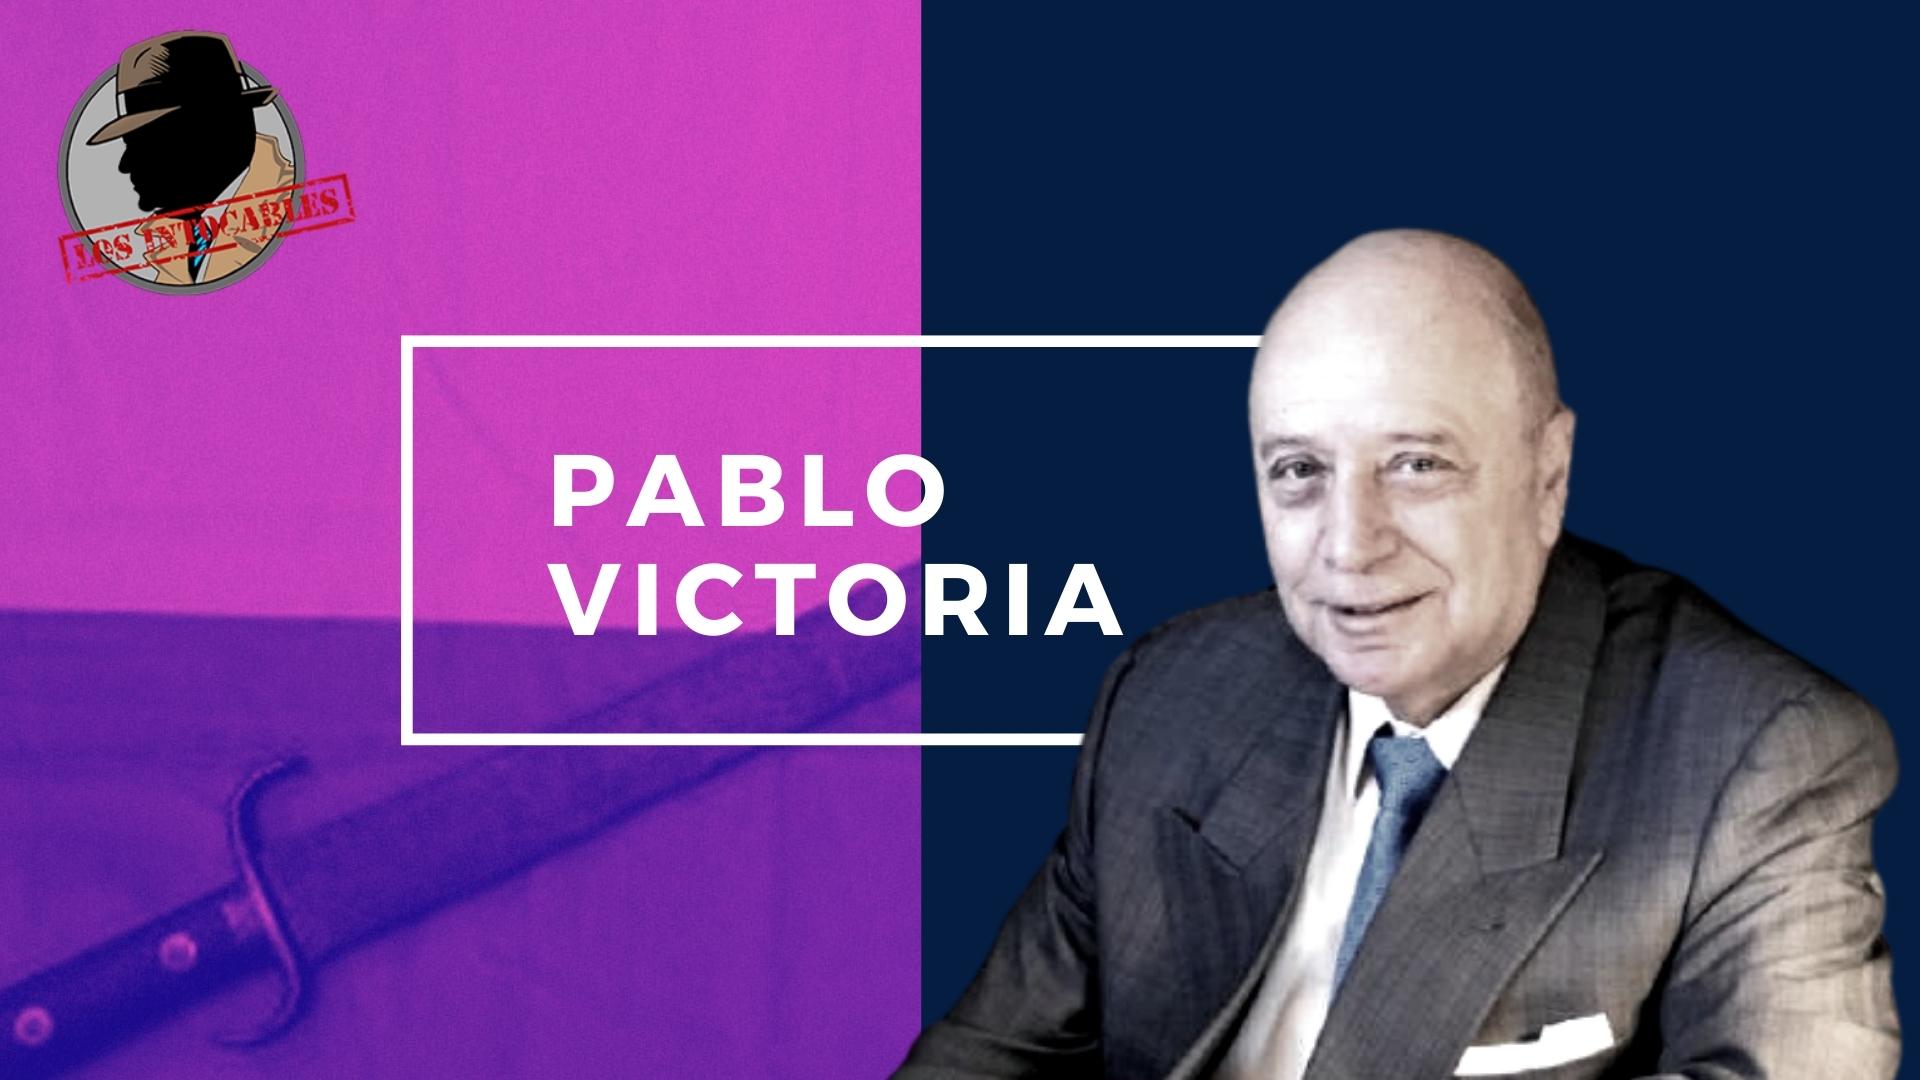 Pablo Victoria